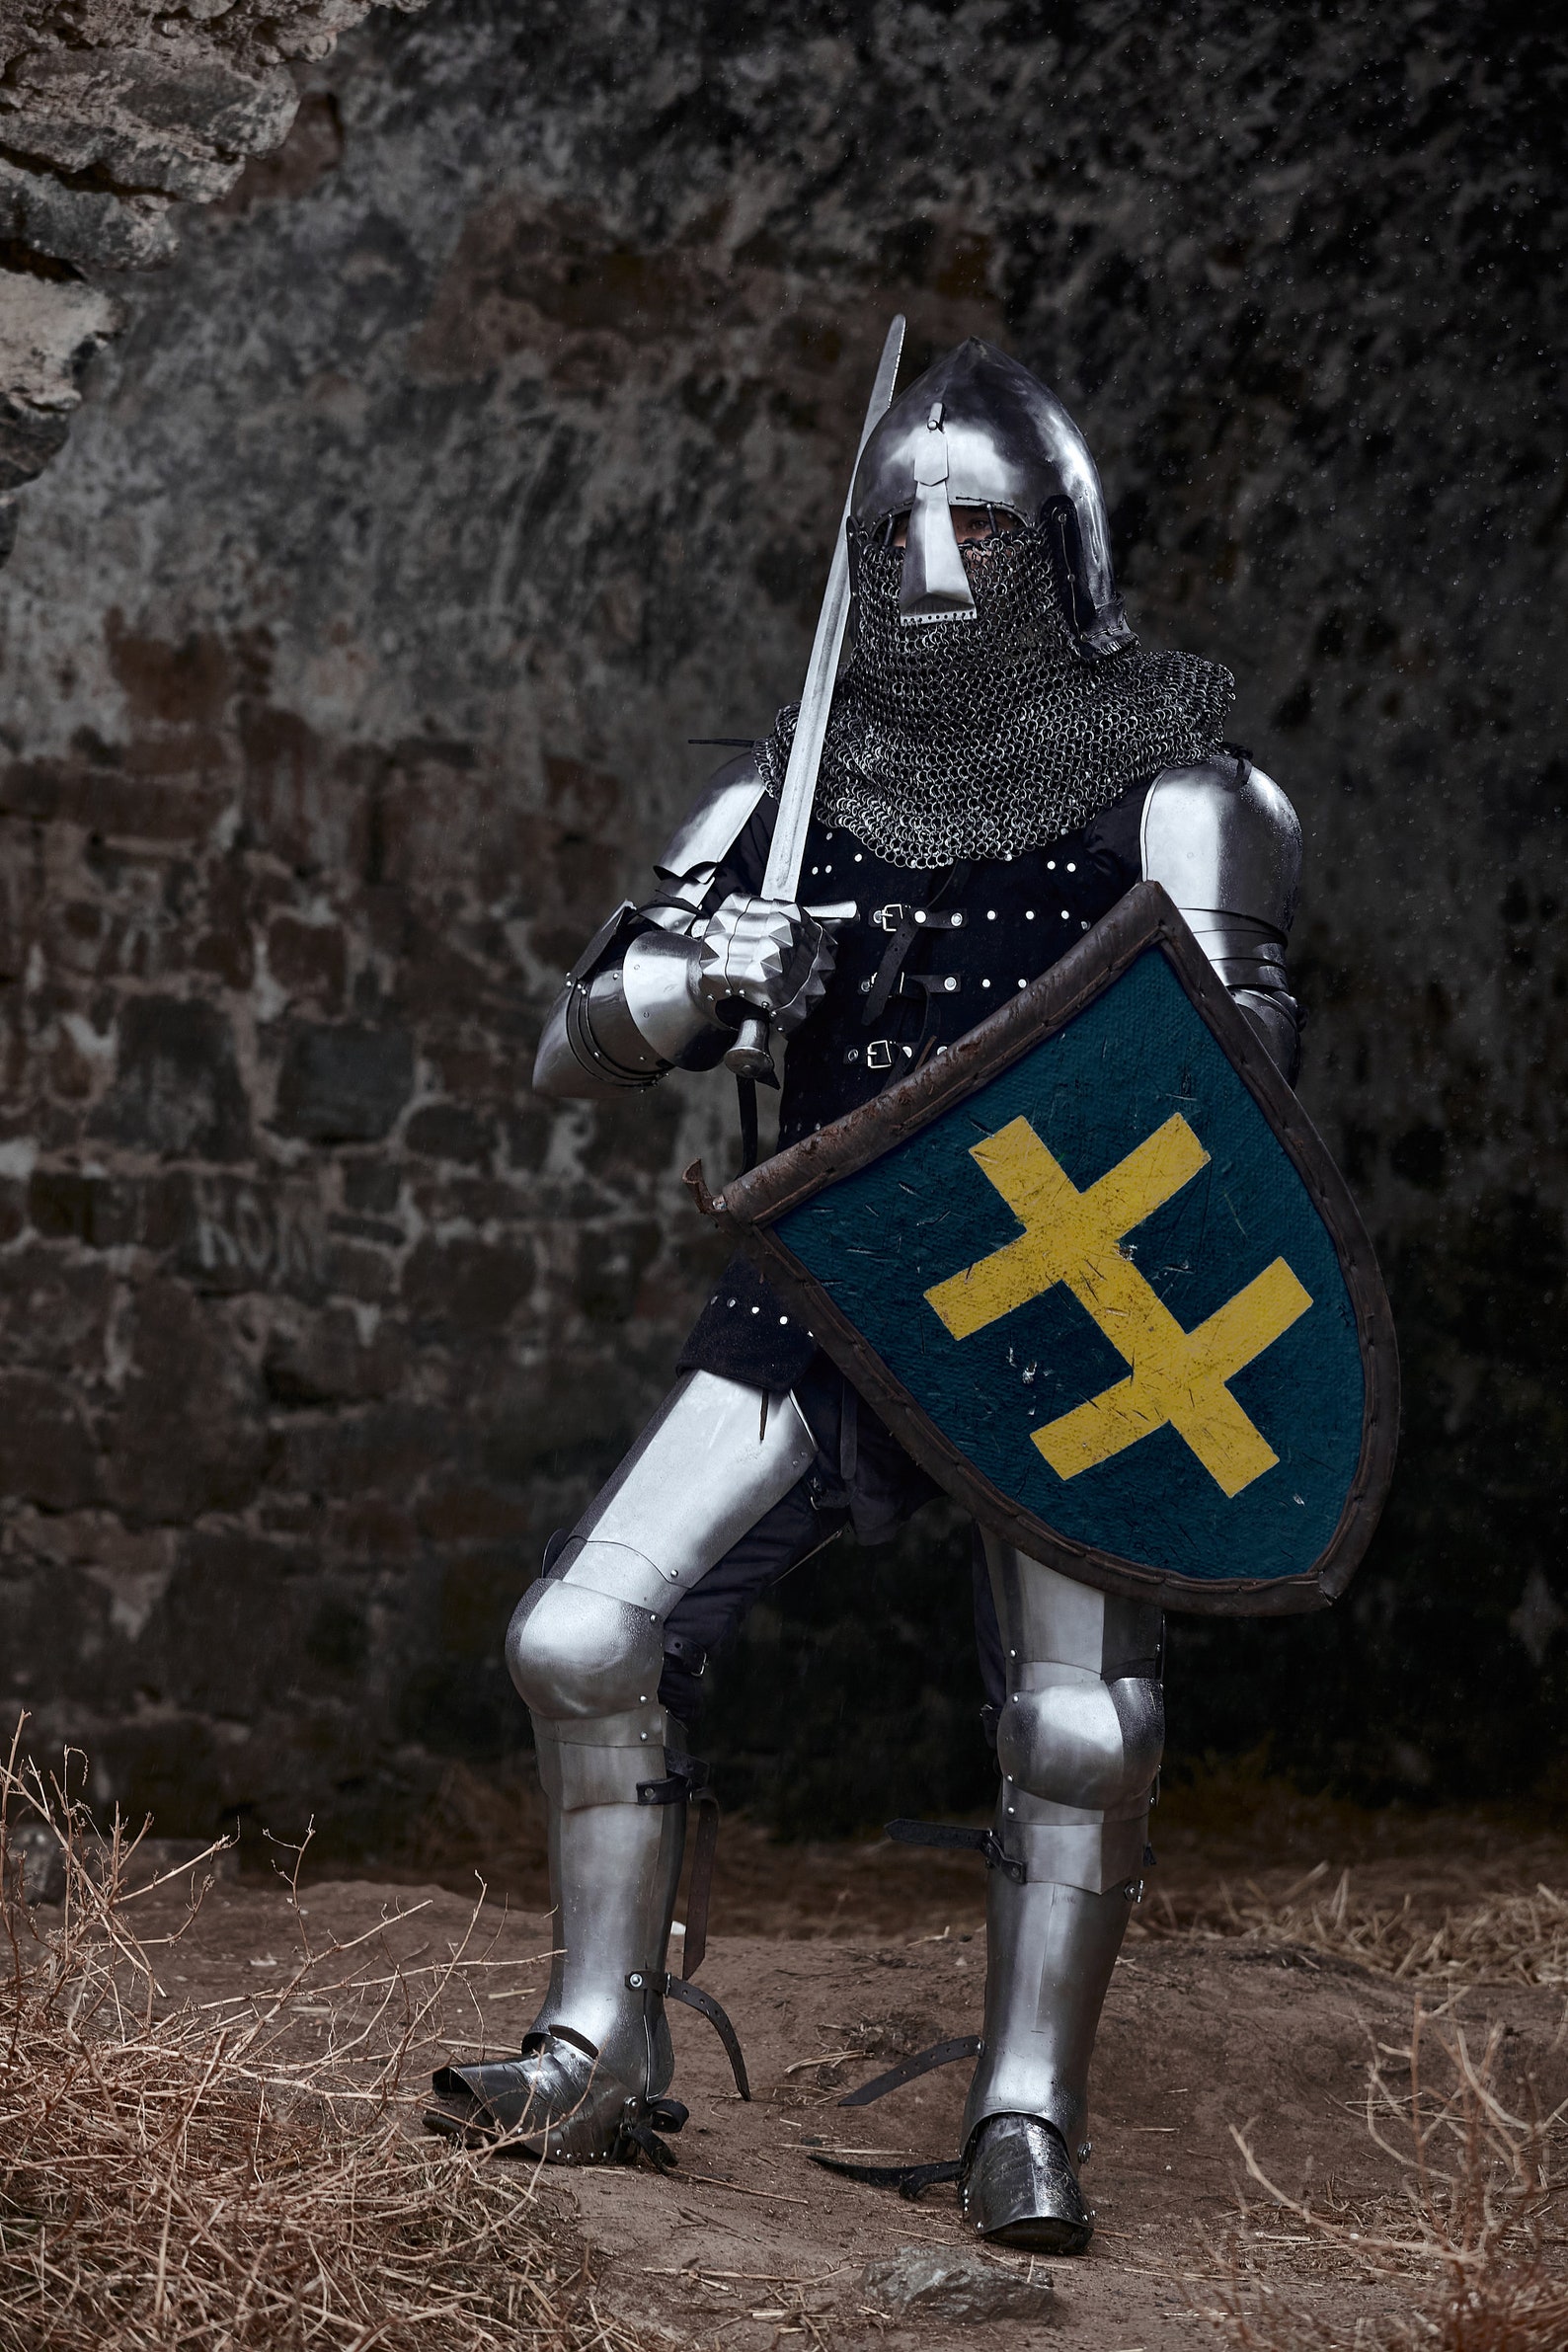 Full Set of Buhurt Armor chuburg Knight 1380 Year. - Etsy